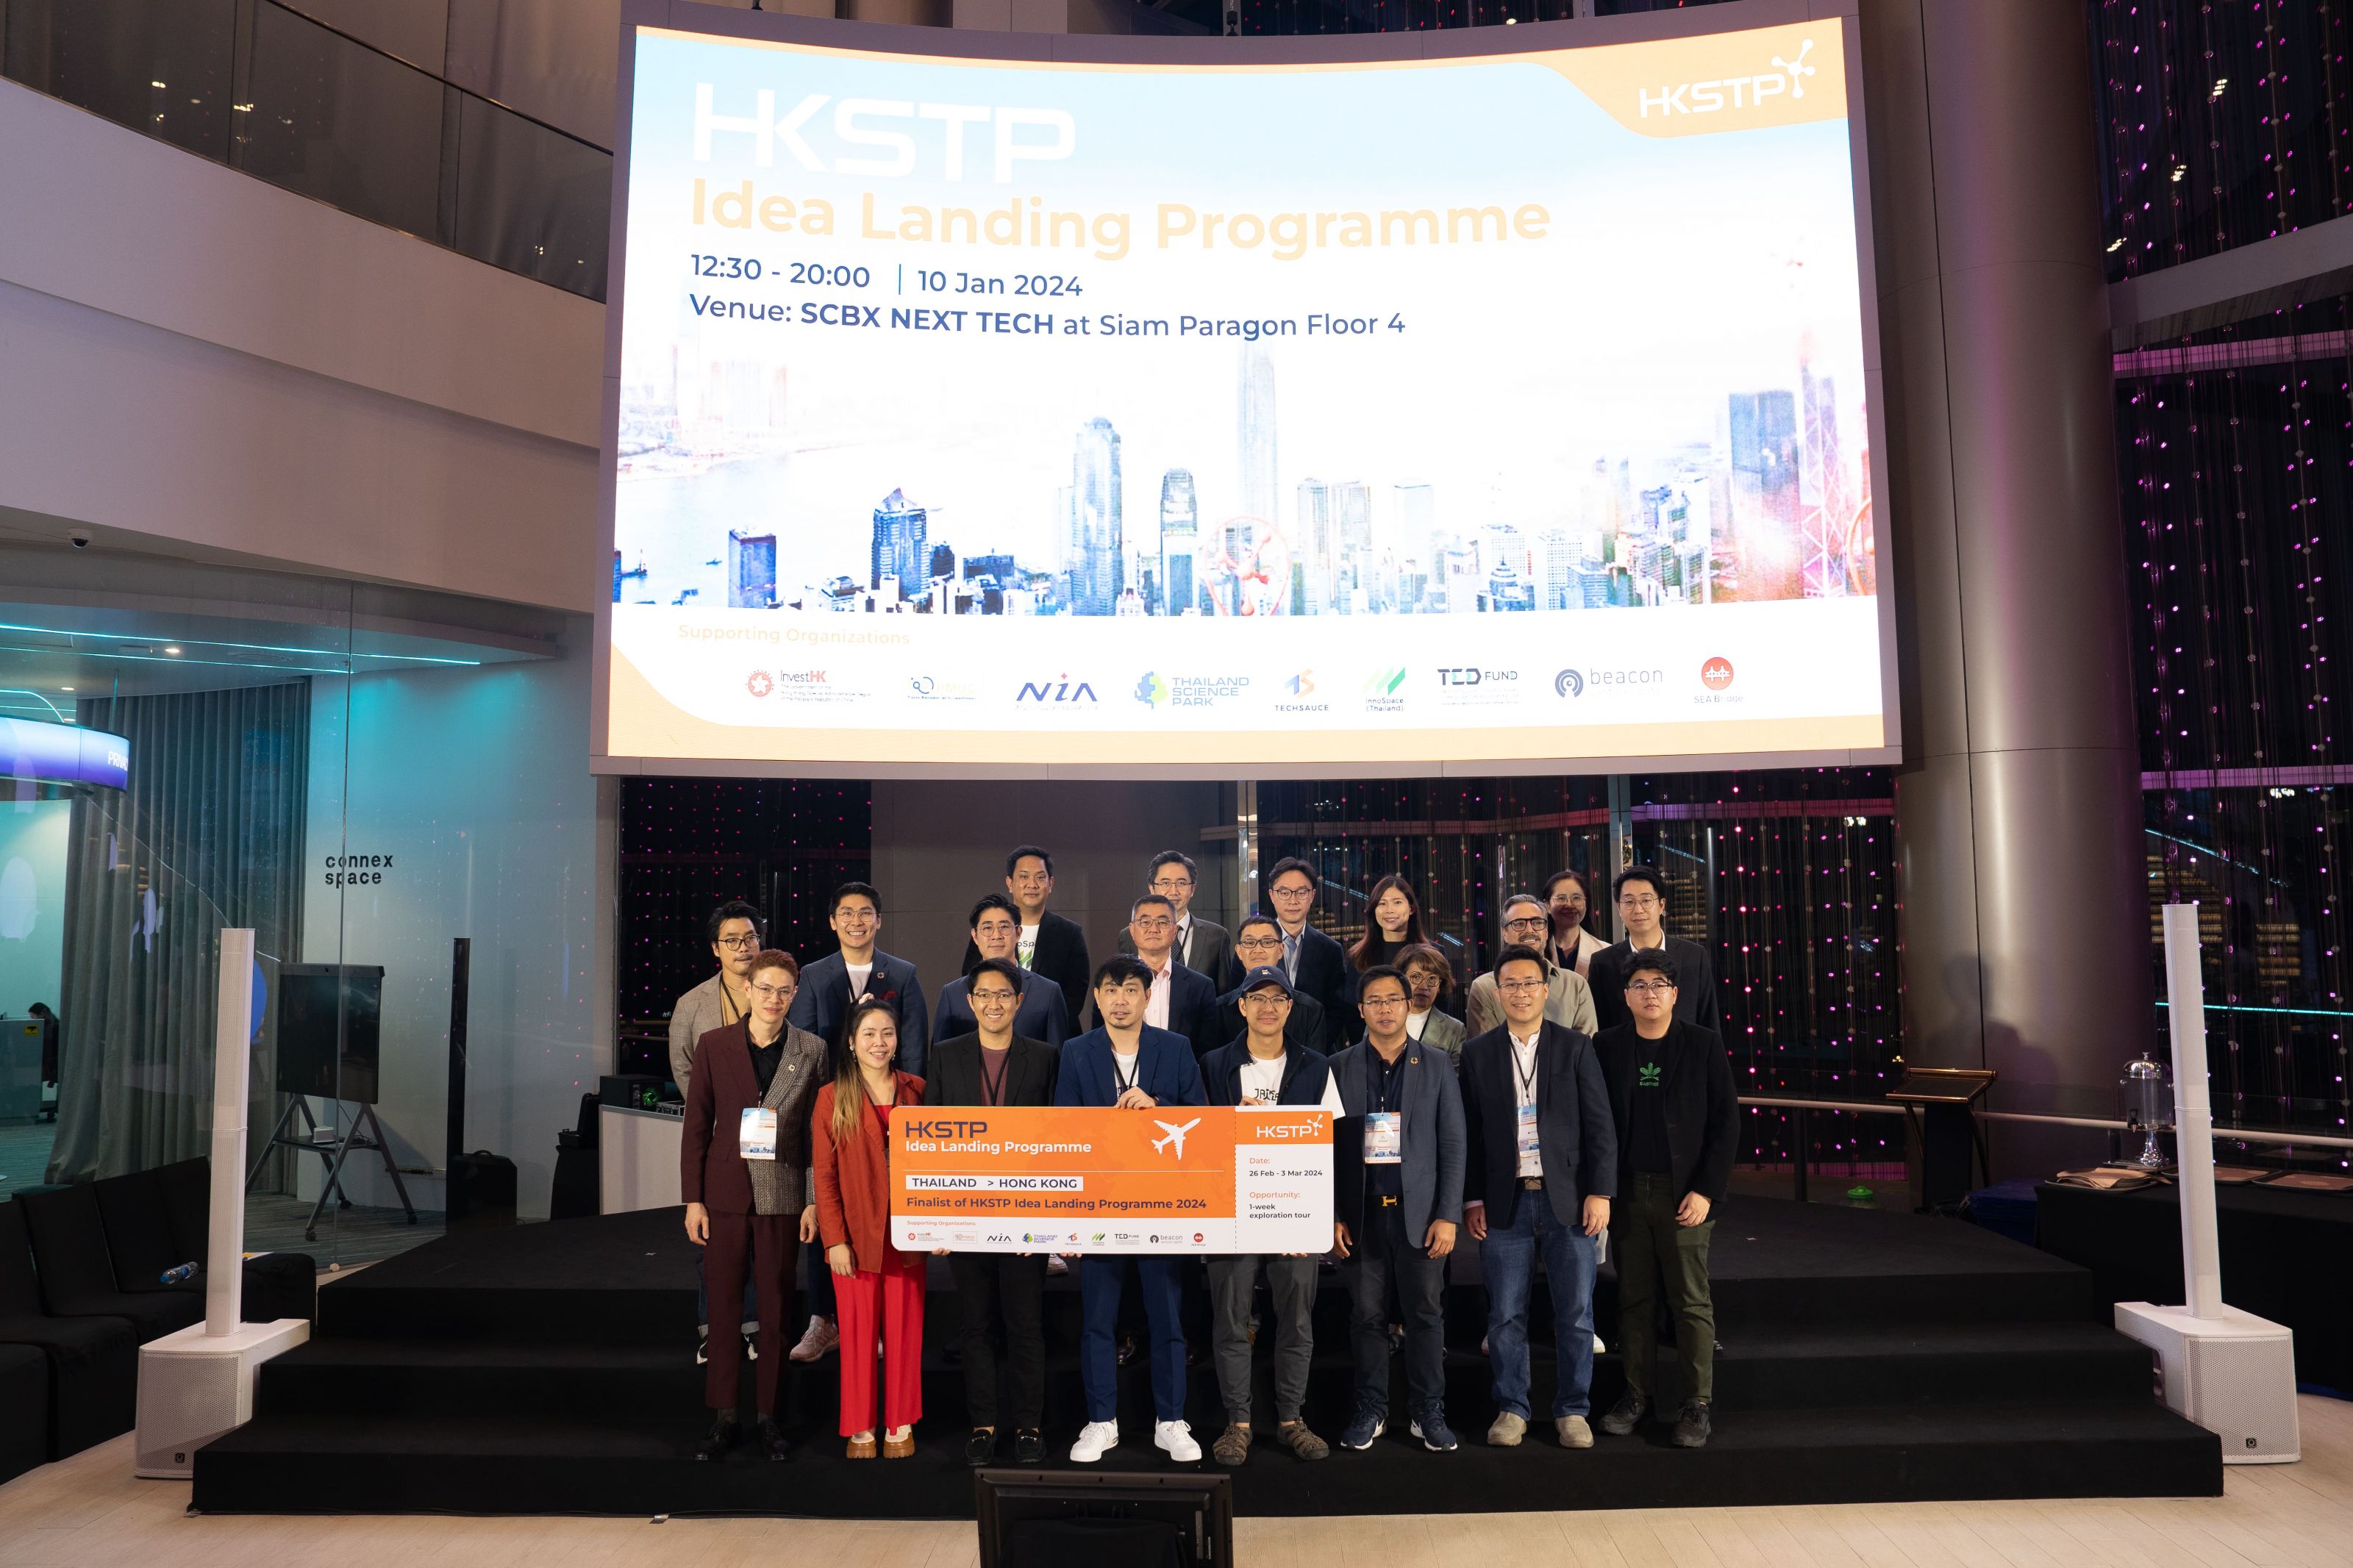 ขอแสดงความยินดีกับ 3 สตาร์ทอัพที่ได้มีโอกาสเข้าร่วมโปรแกรม HKSTP Idea Landing Programme 
		ที่ฮ่องกงและจีนพร้อมรับเงินสนับสนุน HKD 100,000